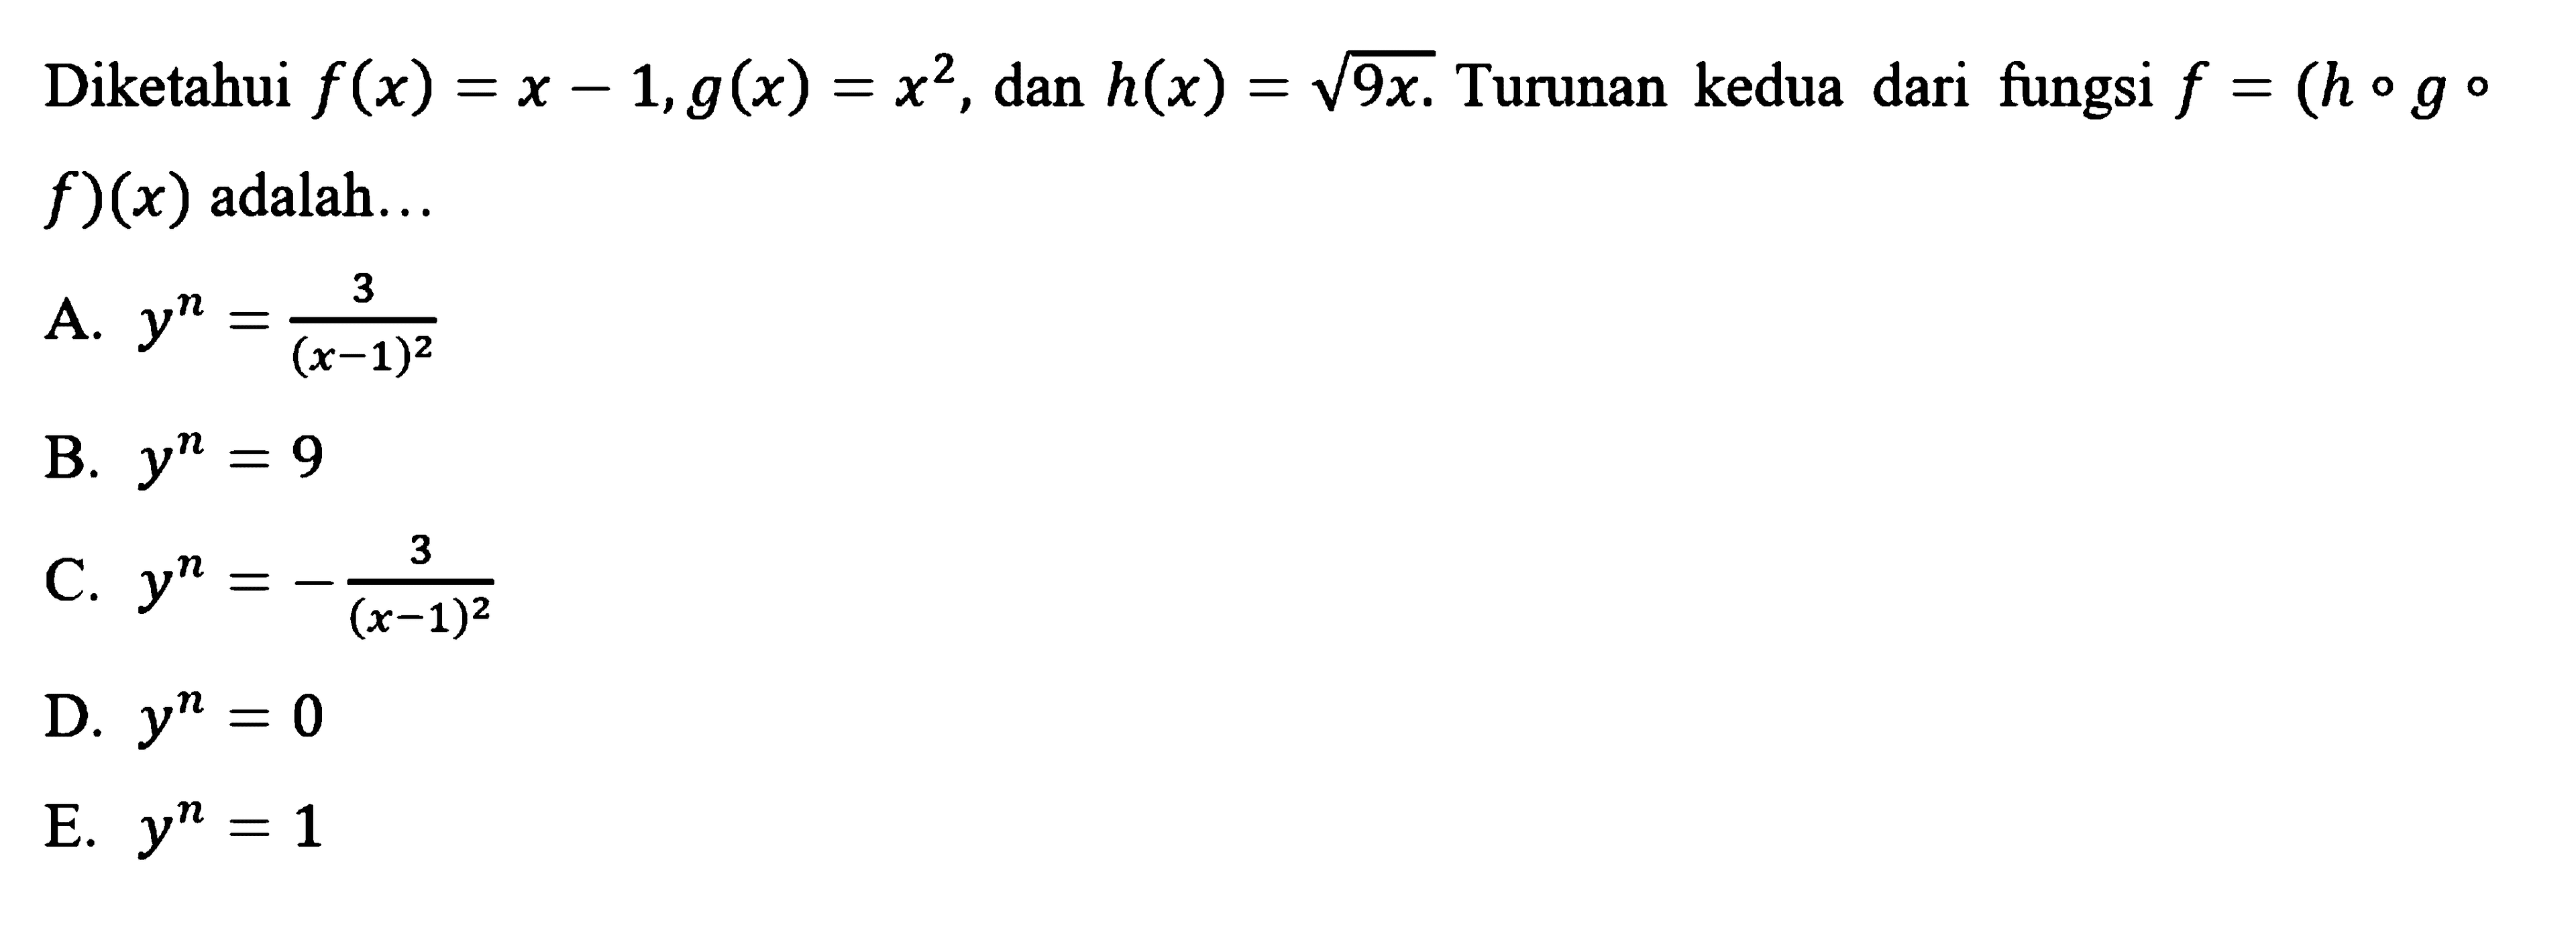 Diketahui f(x) = x - 1, g(x) = x^2, dan h(x) = akar(9x). Turunan kedua dari fungsi f = (h o g o f)(x) adalah